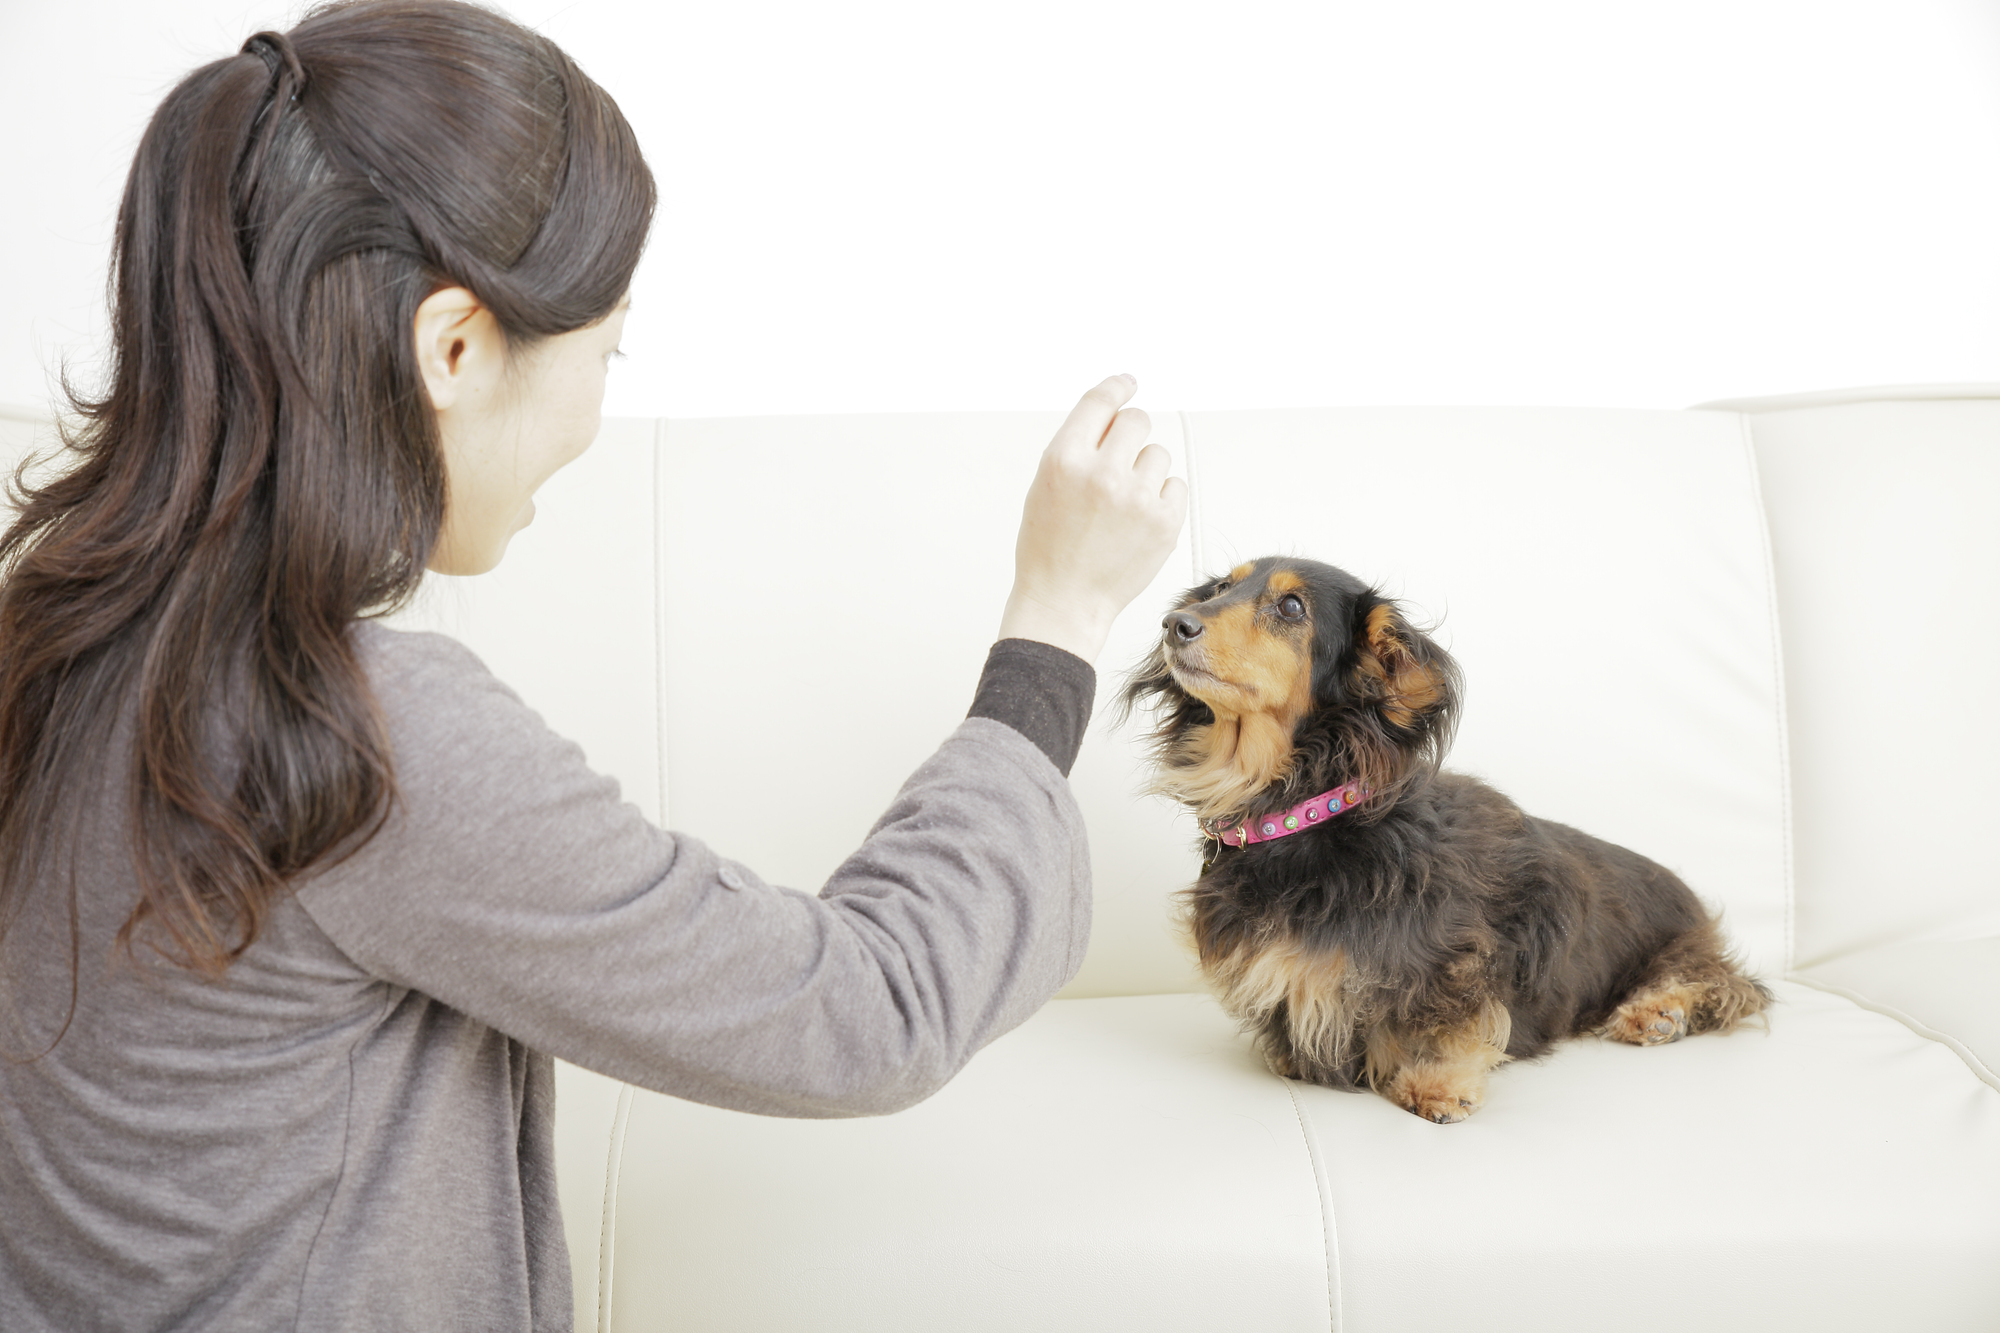 犬の誤飲 誤食を防ぐために 安全に応急処置できる対処法一覧付き アクサダイレクト